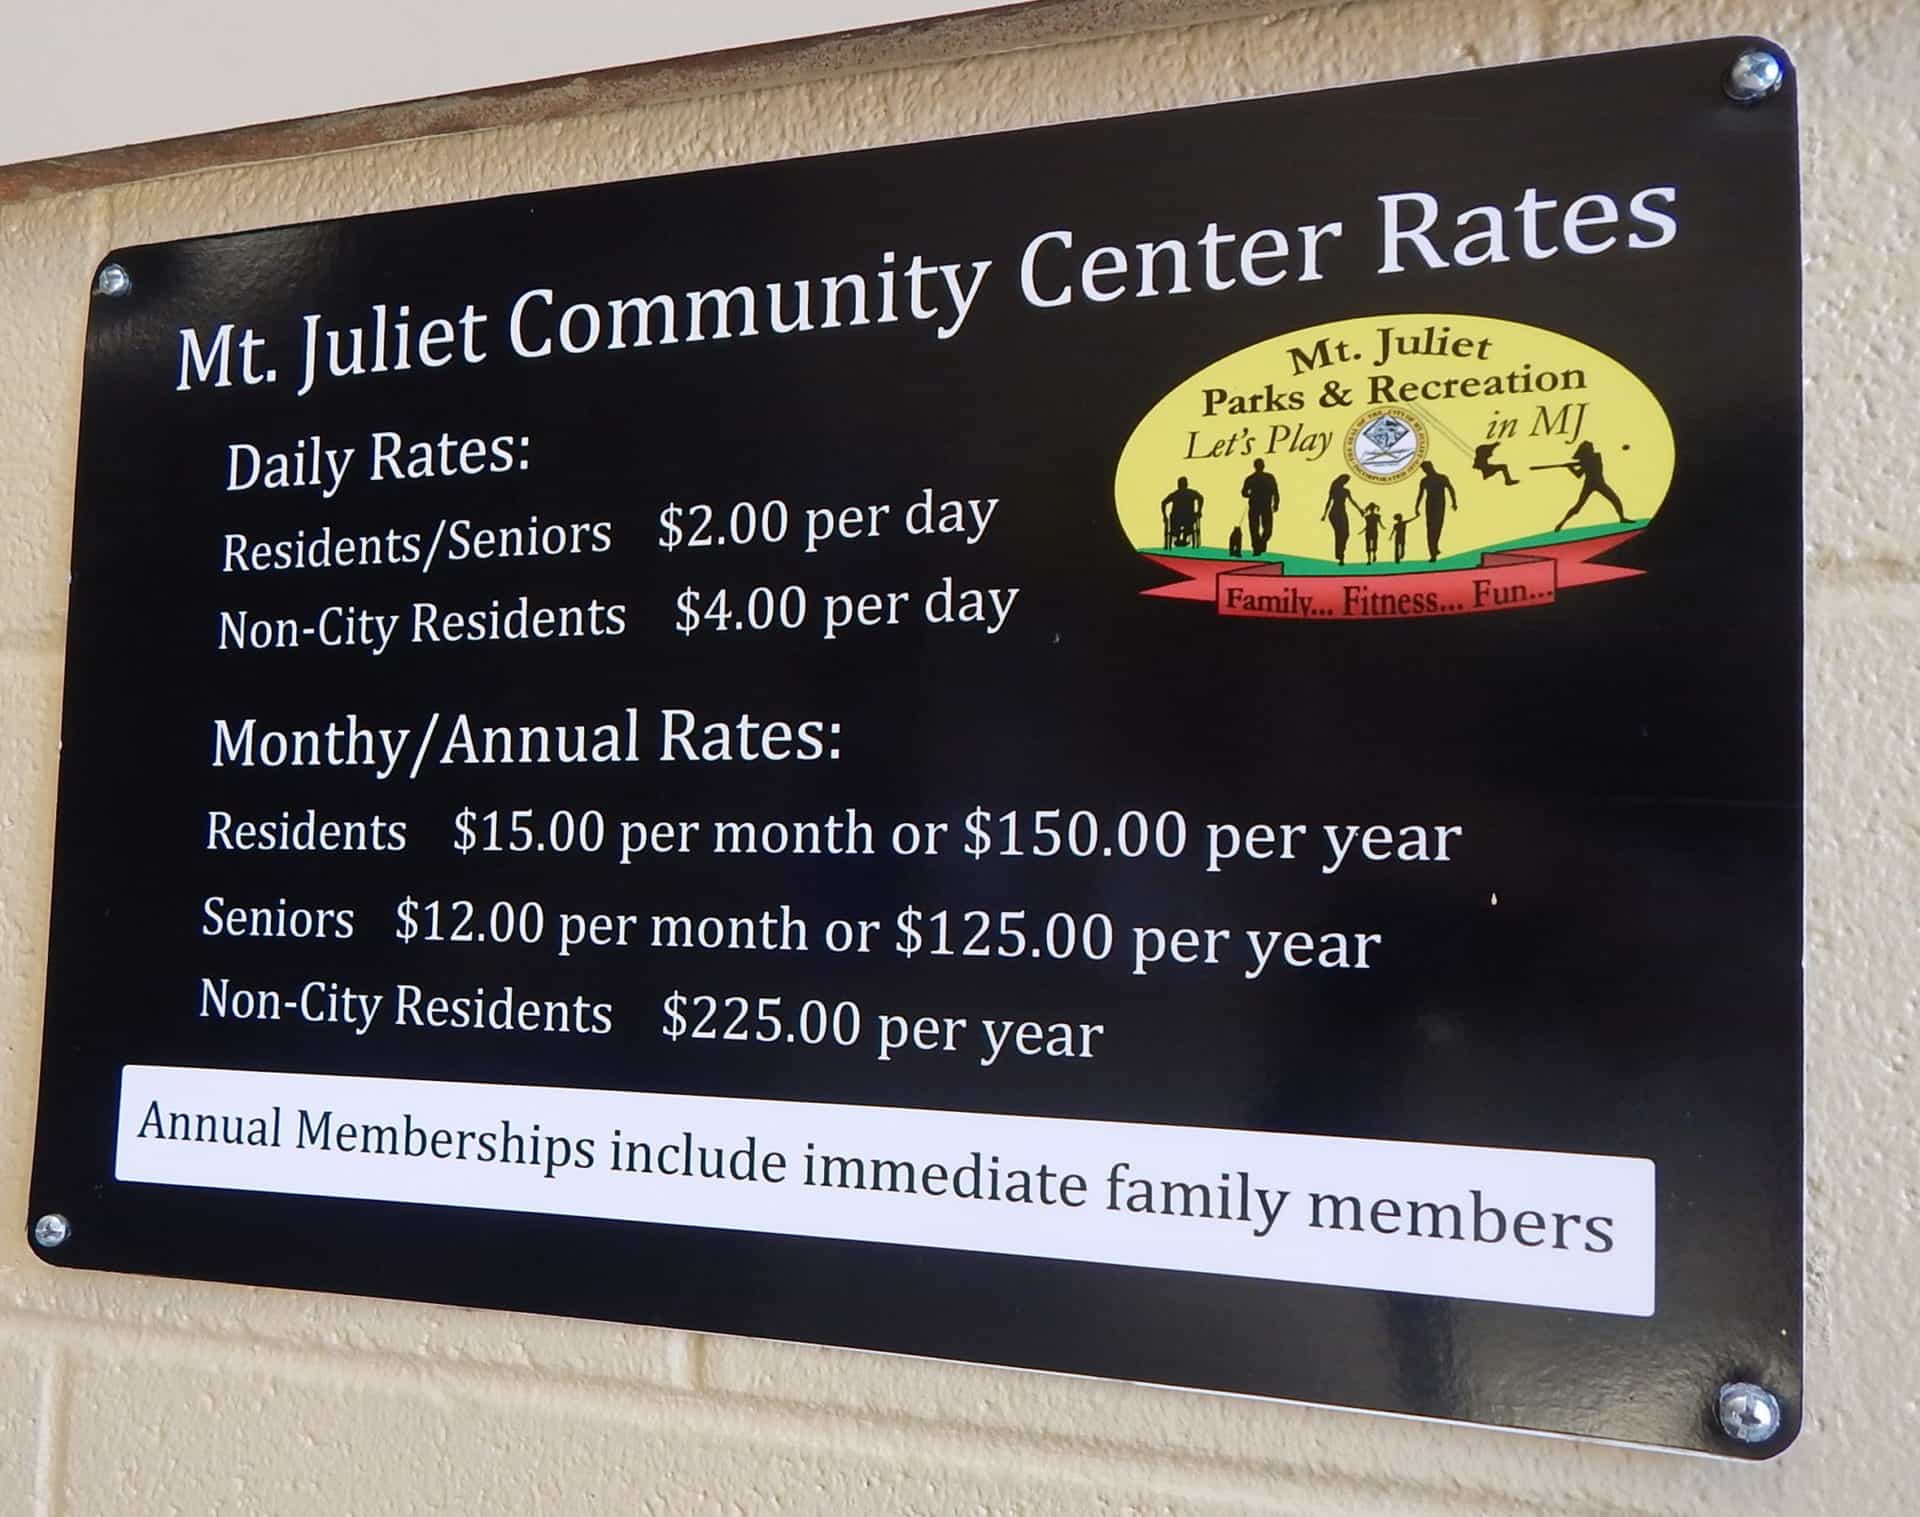 Charlie Daniels Park - Mt Juliet Community Center Rates